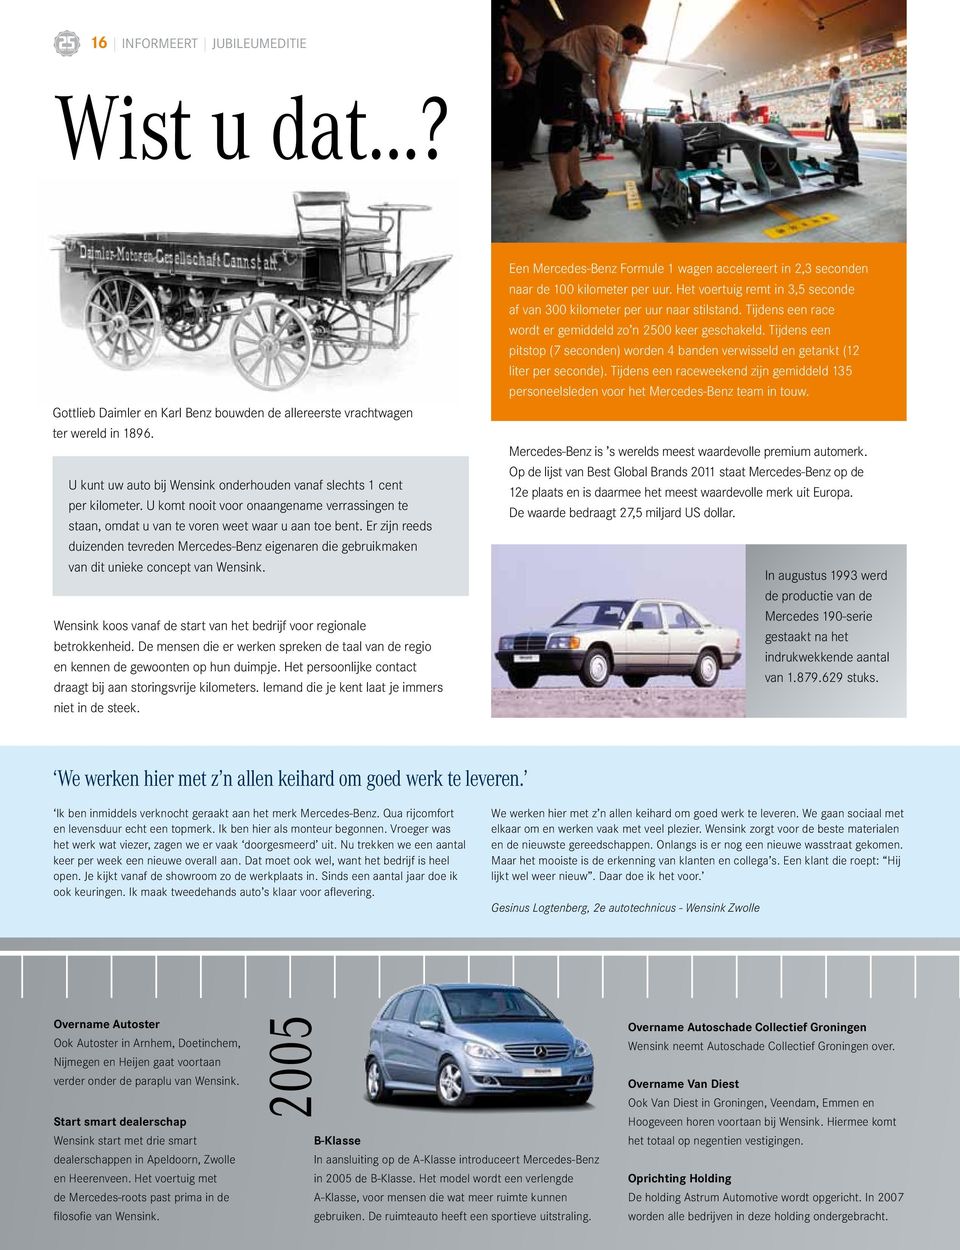 Er zijn reeds duizenden tevreden Mercedes-Benz eigenaren die gebruikmaken van dit unieke concept van Wensink. Wensink koos vanaf de start van het bedrijf voor regionale betrokkenheid.